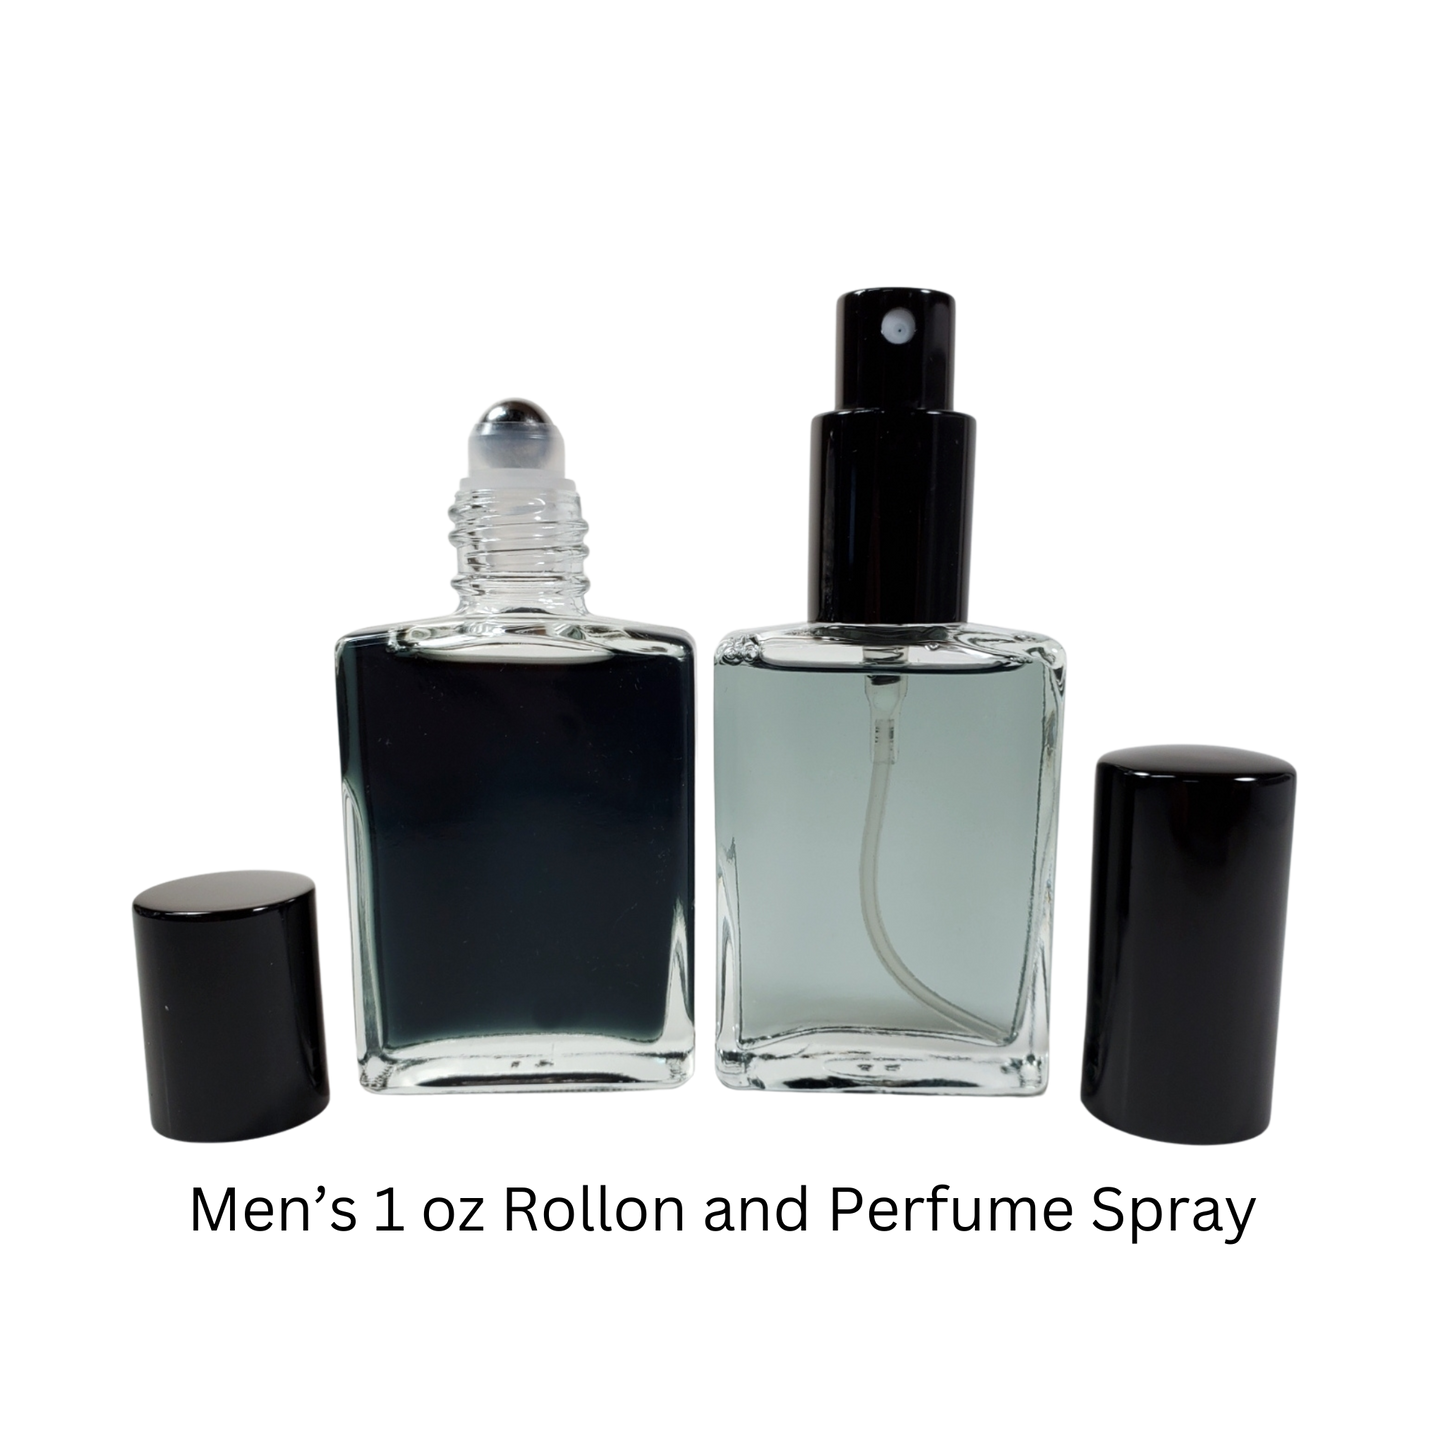 Spicebomb Night Vision Type* / Cologne Body Oil / Eau de Parfum